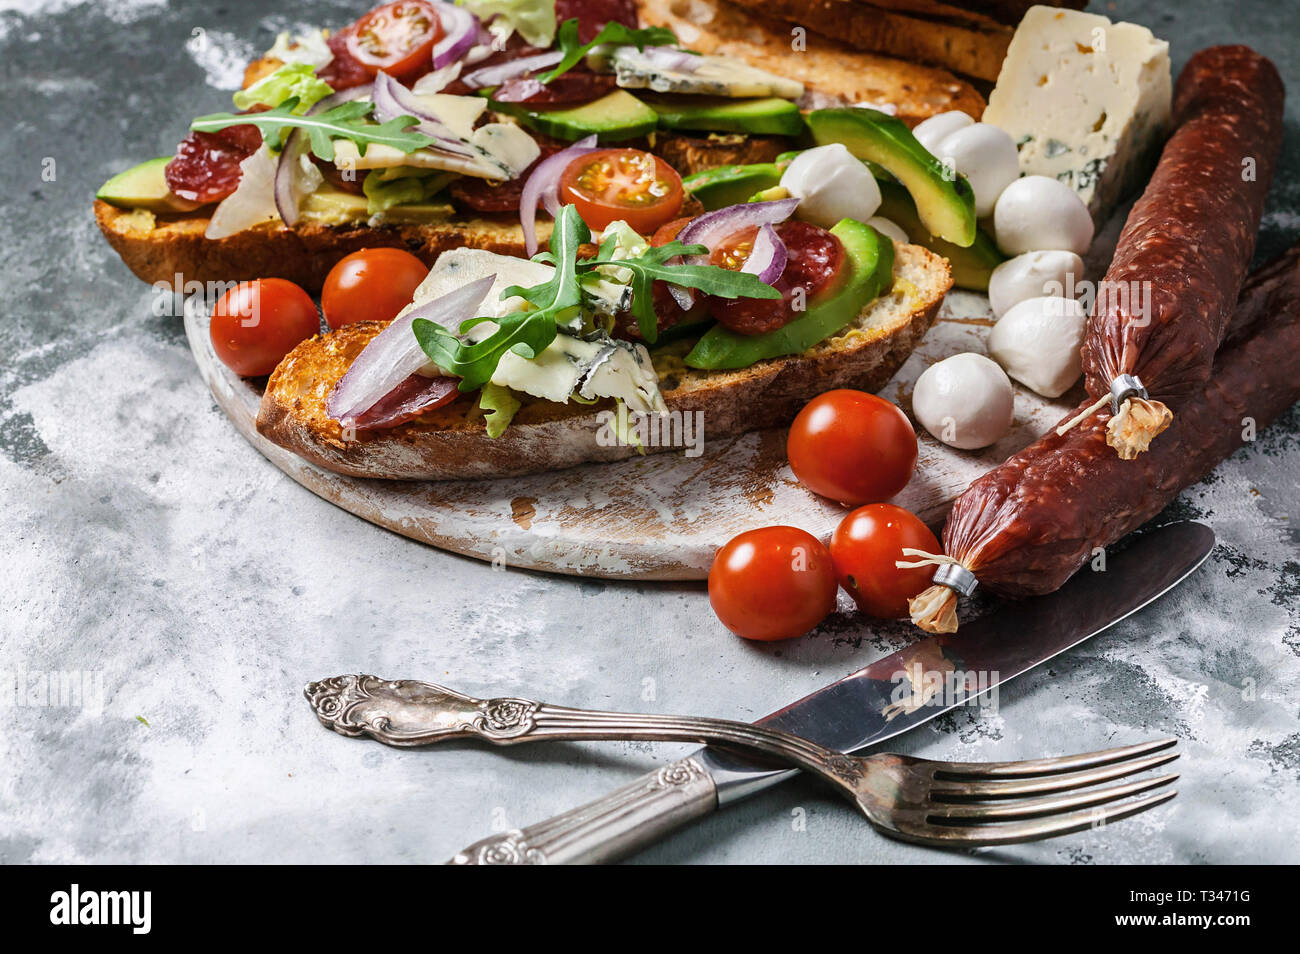 Köstliche Sandwiches mit geräucherter Wurst, Avocado, Käse, Tomaten, roten Zwiebeln und Rucola. Stockfoto